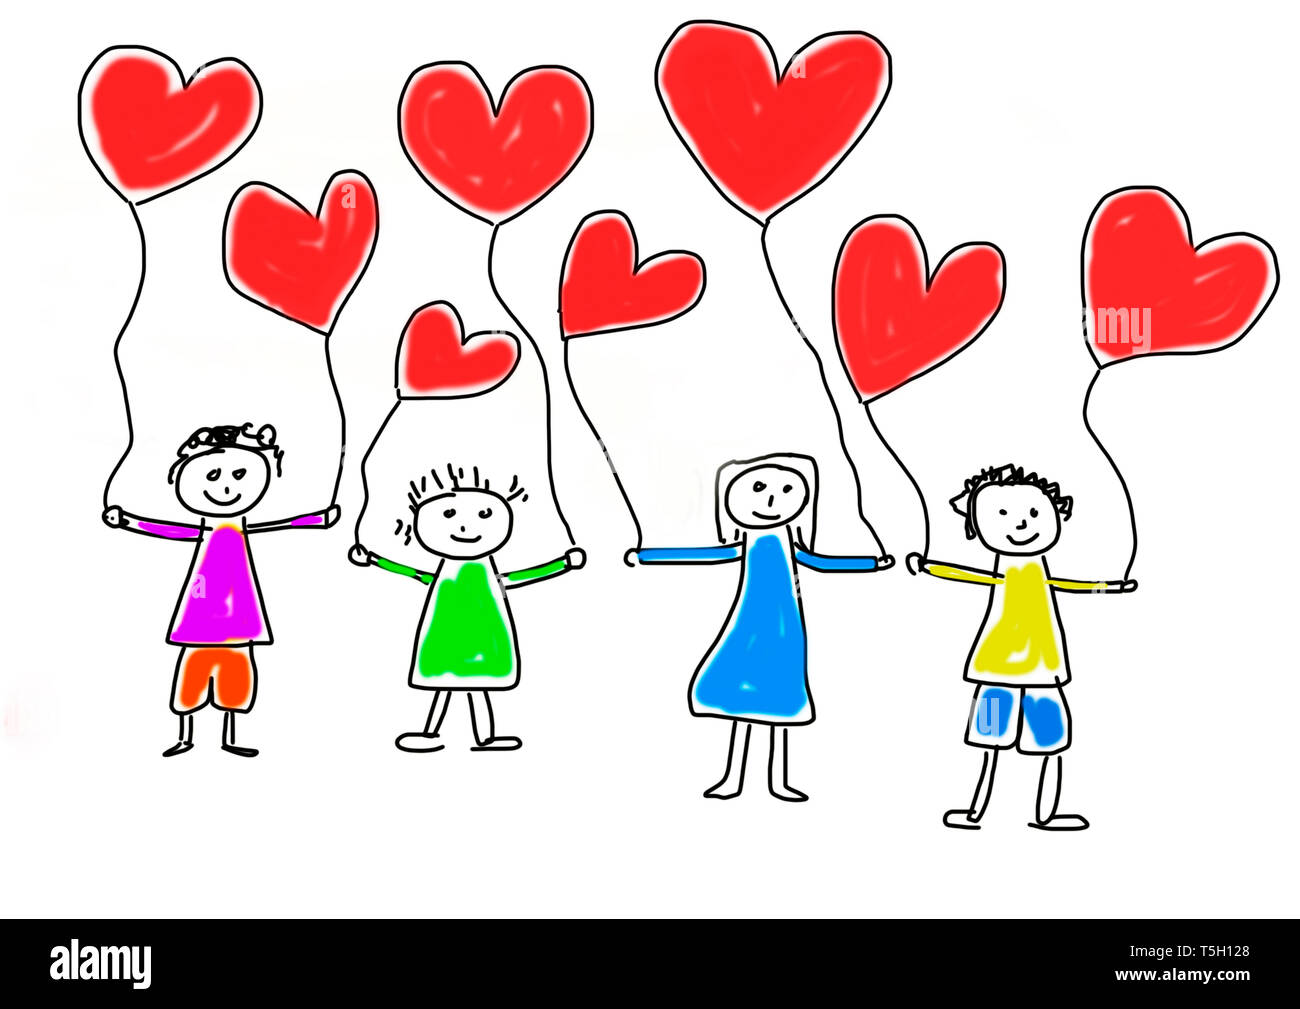 Disegno per bambini di quattro bambini felici con heart-shaped balloons Foto Stock